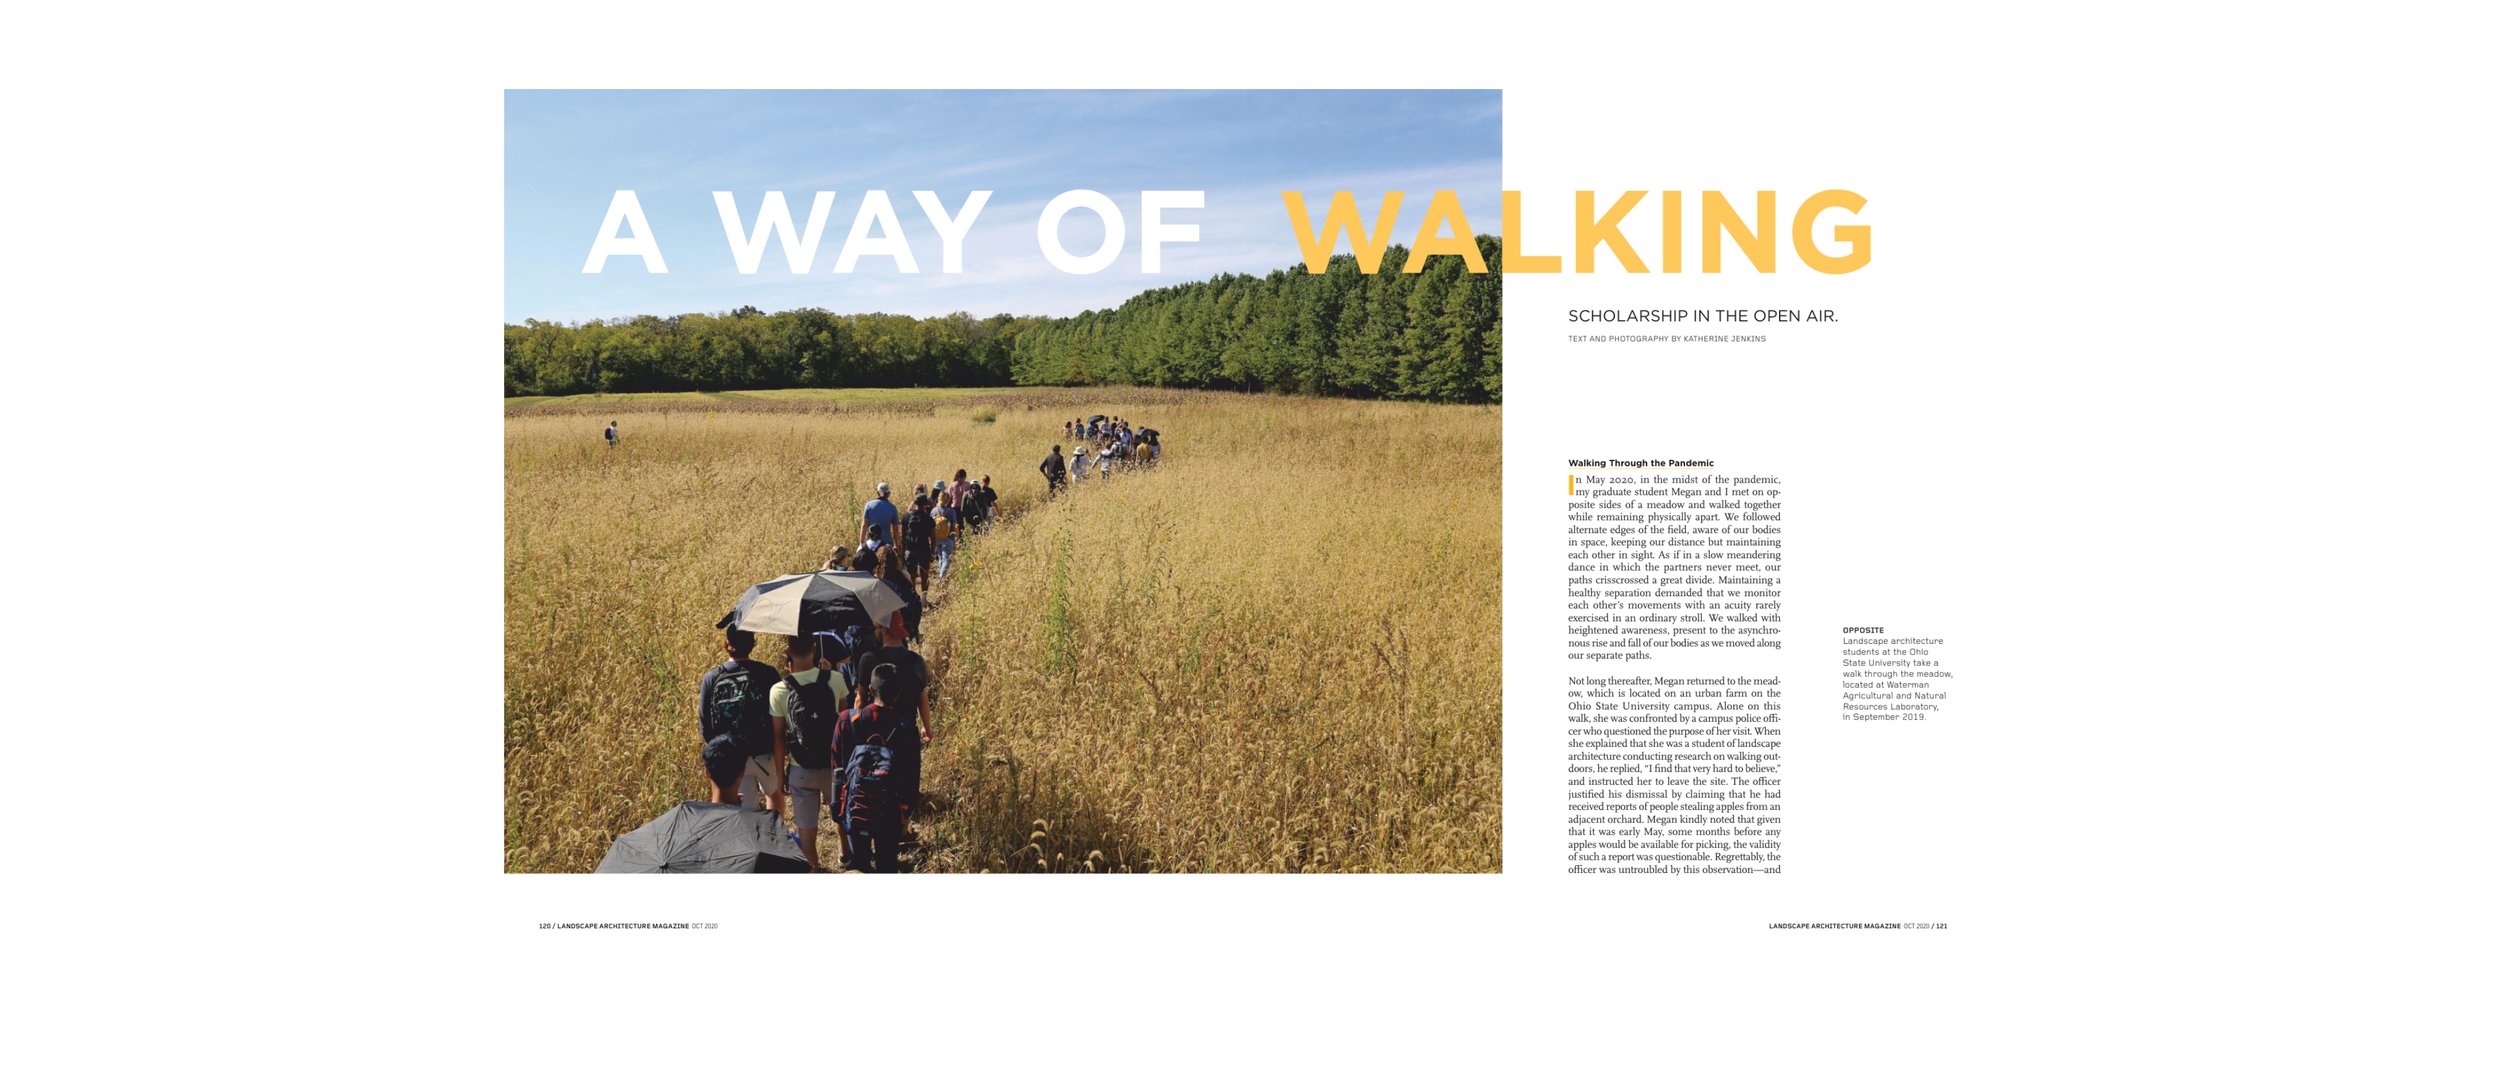 PUBLIC_LAM_WAY OF WALKING.jpg